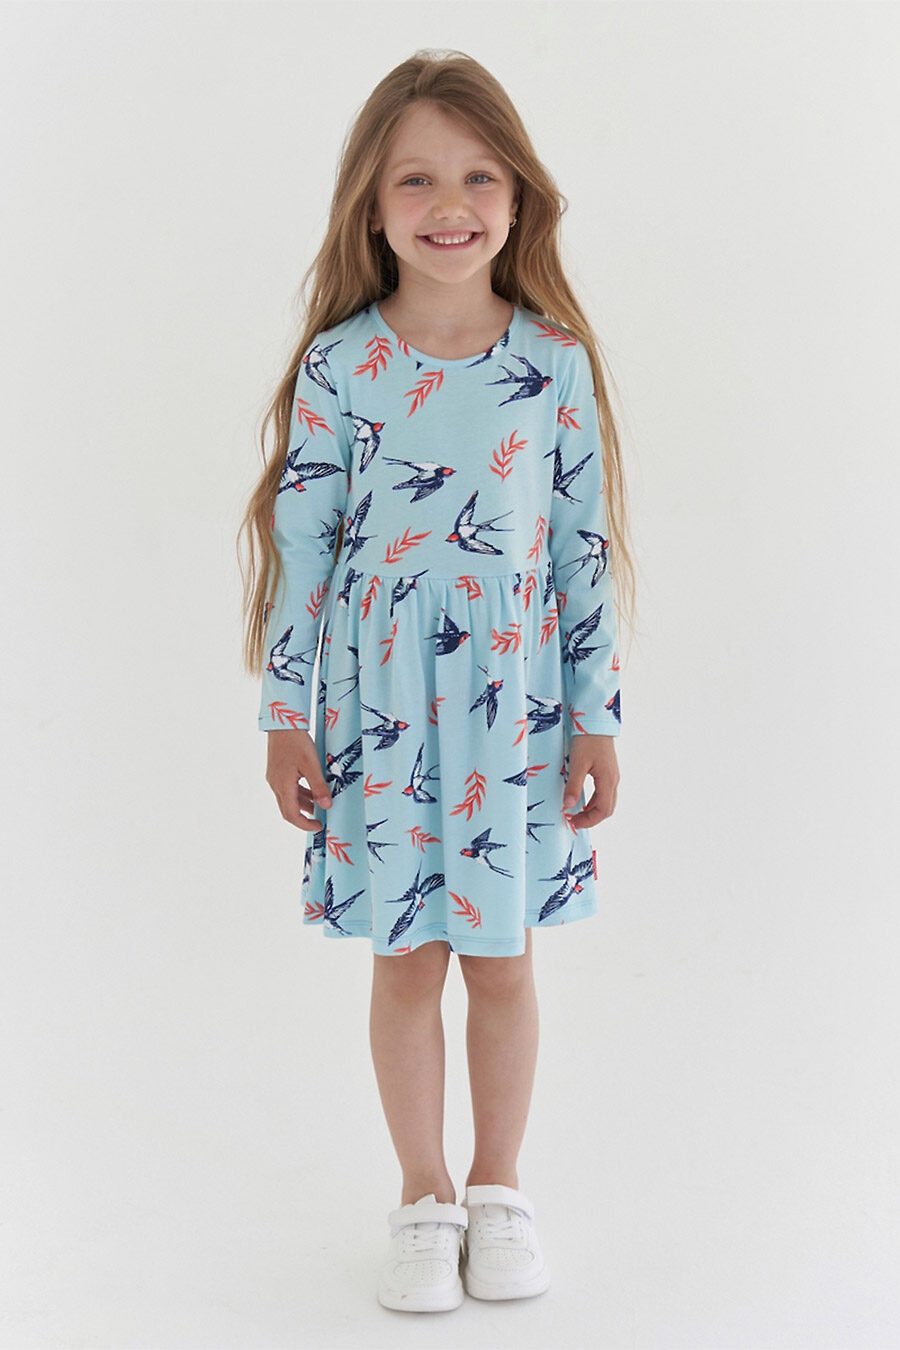 Платье для девочек KOGANKIDS 784556 купить оптом от производителя. Совместная покупка детской одежды в OptMoyo